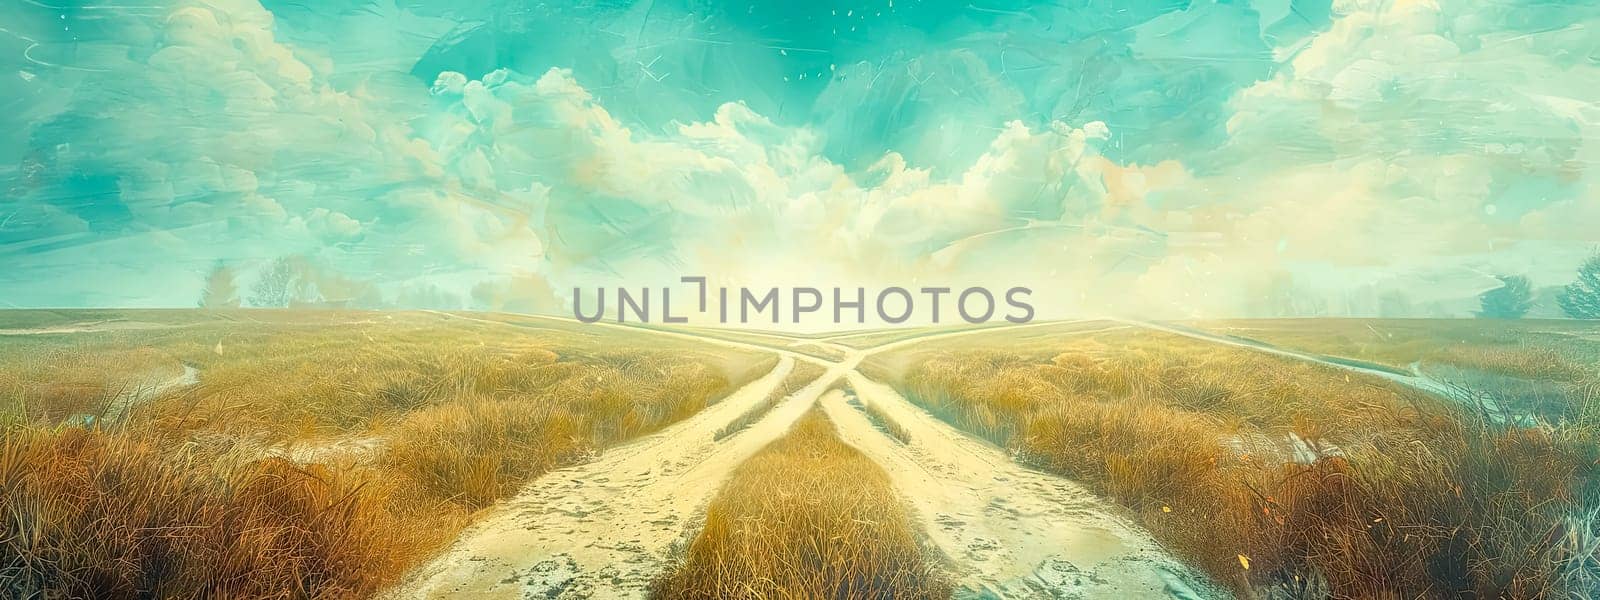 Crossroads in golden field under cloudy sky by Edophoto